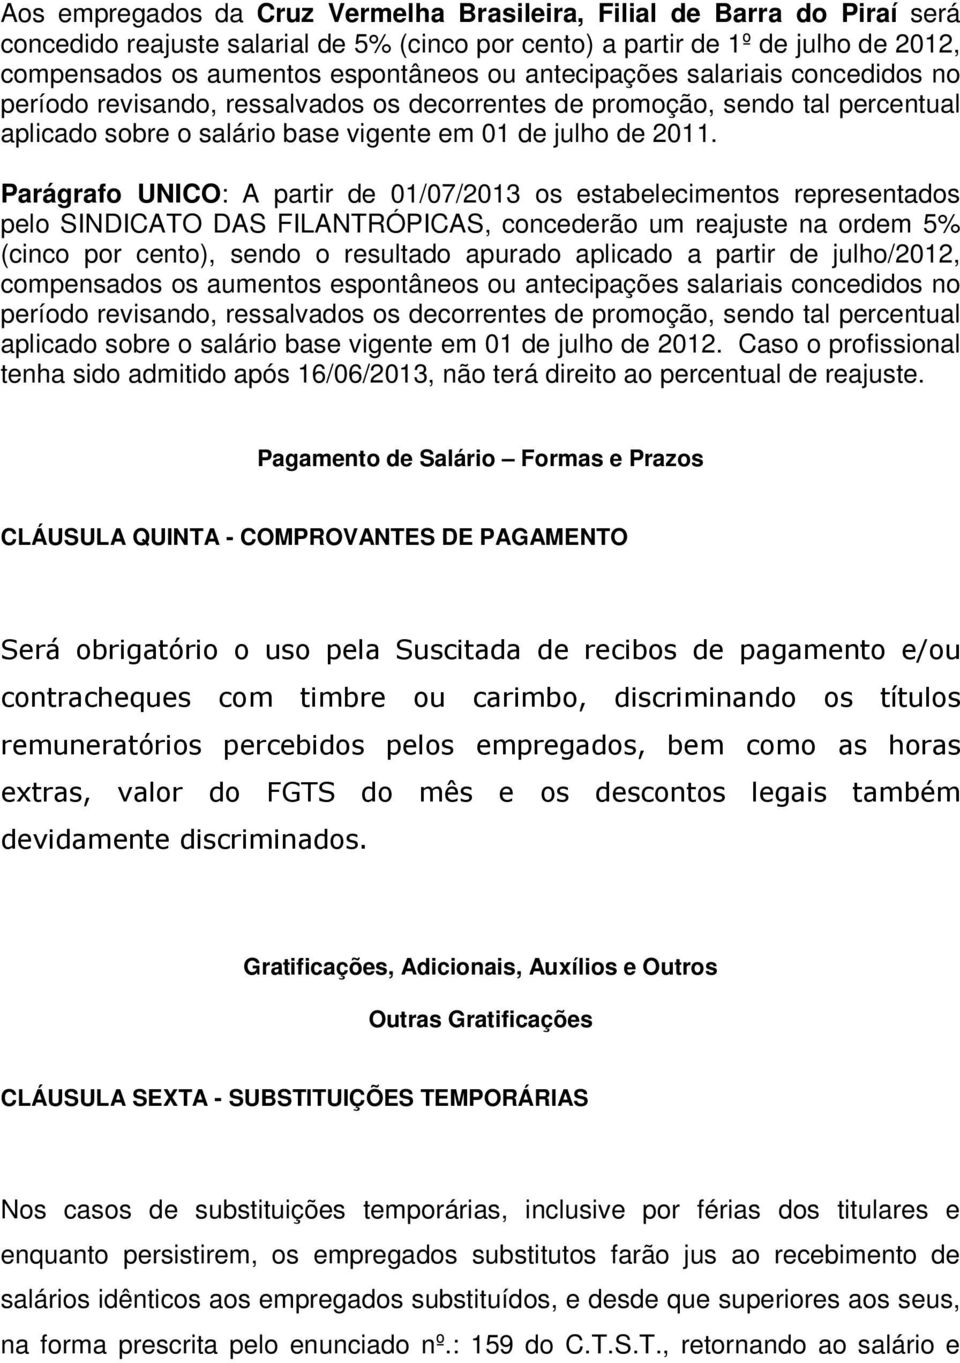 Parágrafo UNICO: A partir de 01/07/2013 os estabelecimentos representados pelo SINDICATO DAS FILANTRÓPICAS, concederão um reajuste na ordem 5% (cinco por cento), sendo o resultado apurado aplicado a